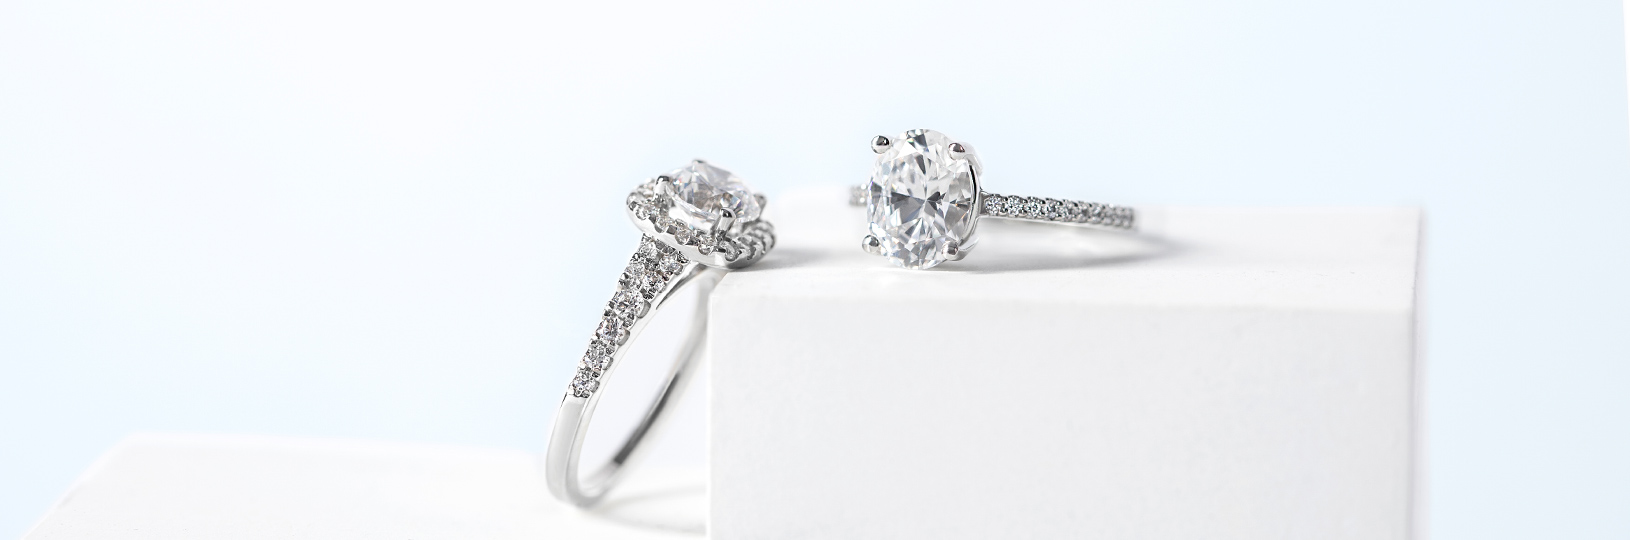 Platinum engagement rings